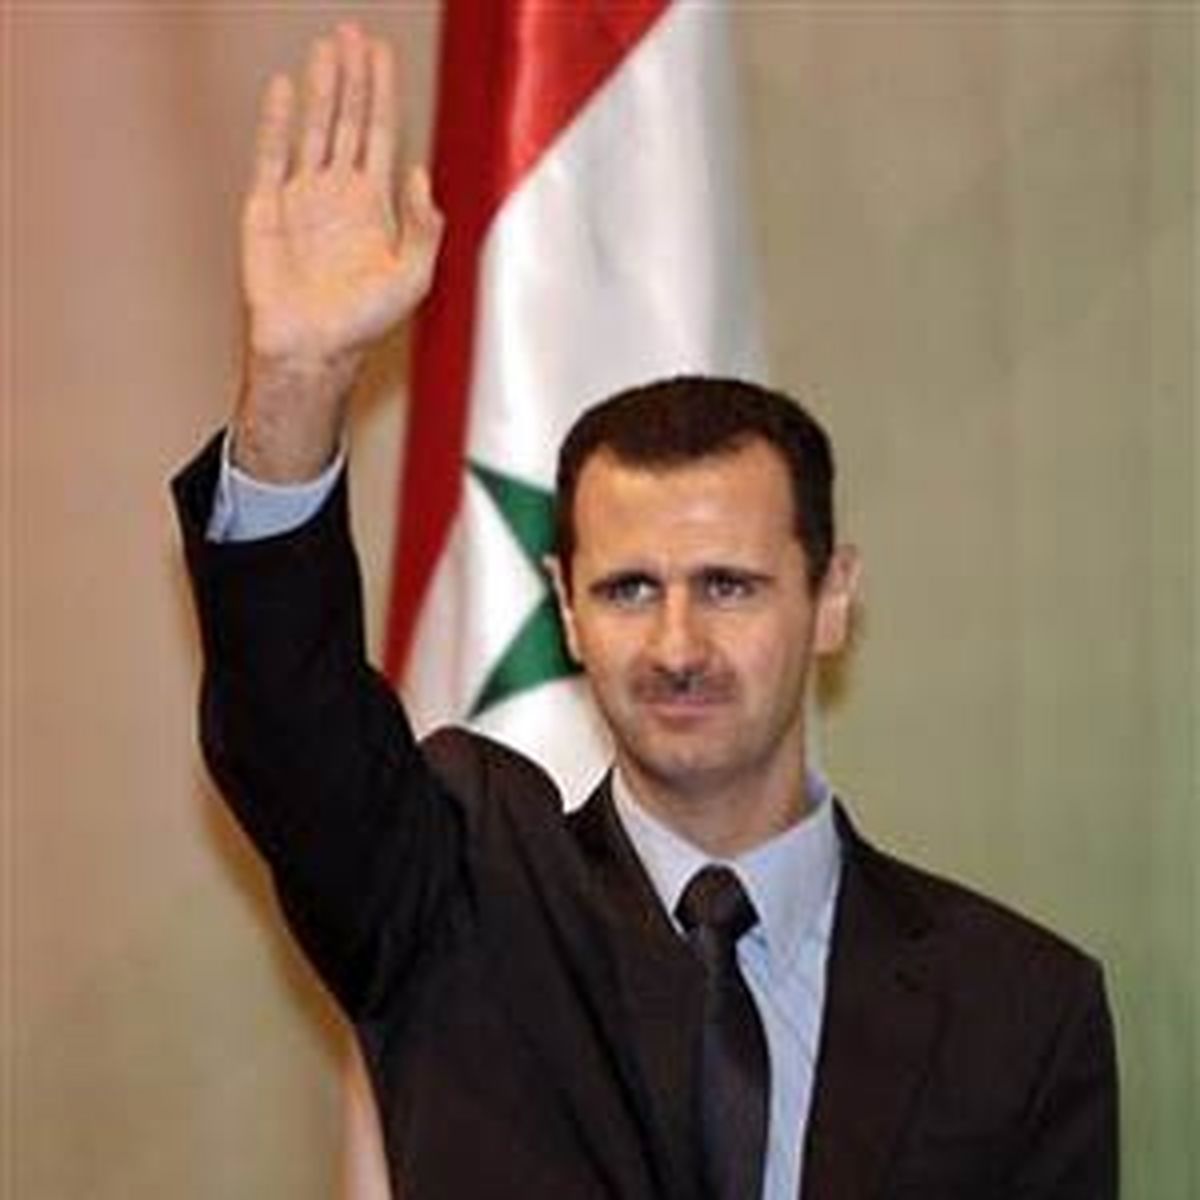 پخش تصاویر اسد از تلویزیون سوریه پس از شایعات روزهای اخیر